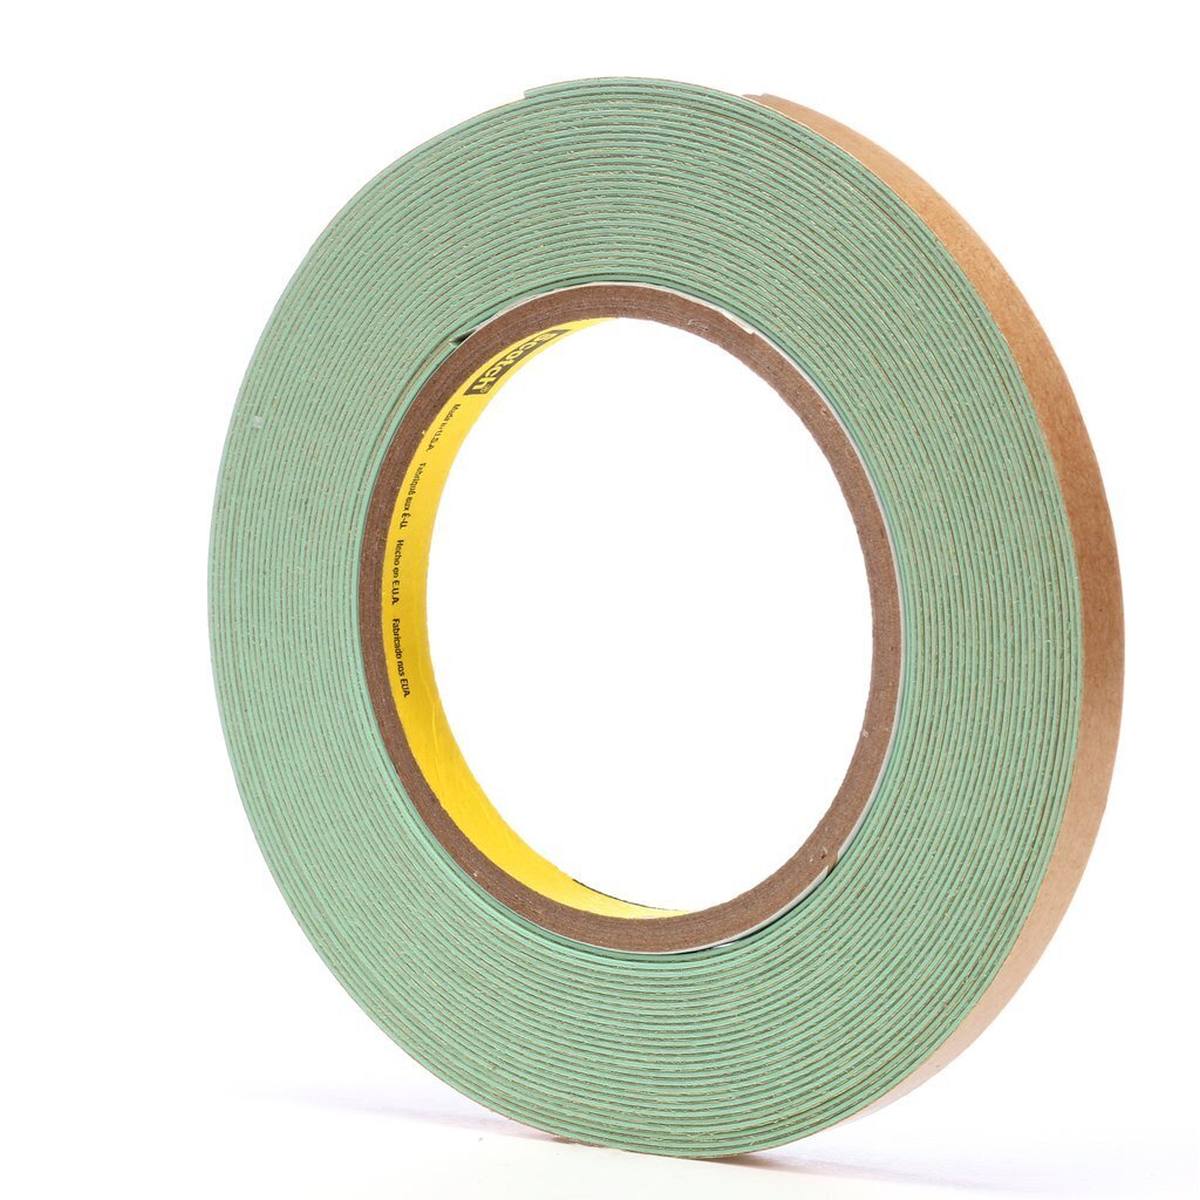 3M Ruban d'étanchéité pour joints, vert clair, 9,1 m x 9,5 mm x 0,9 mm, peut être peint